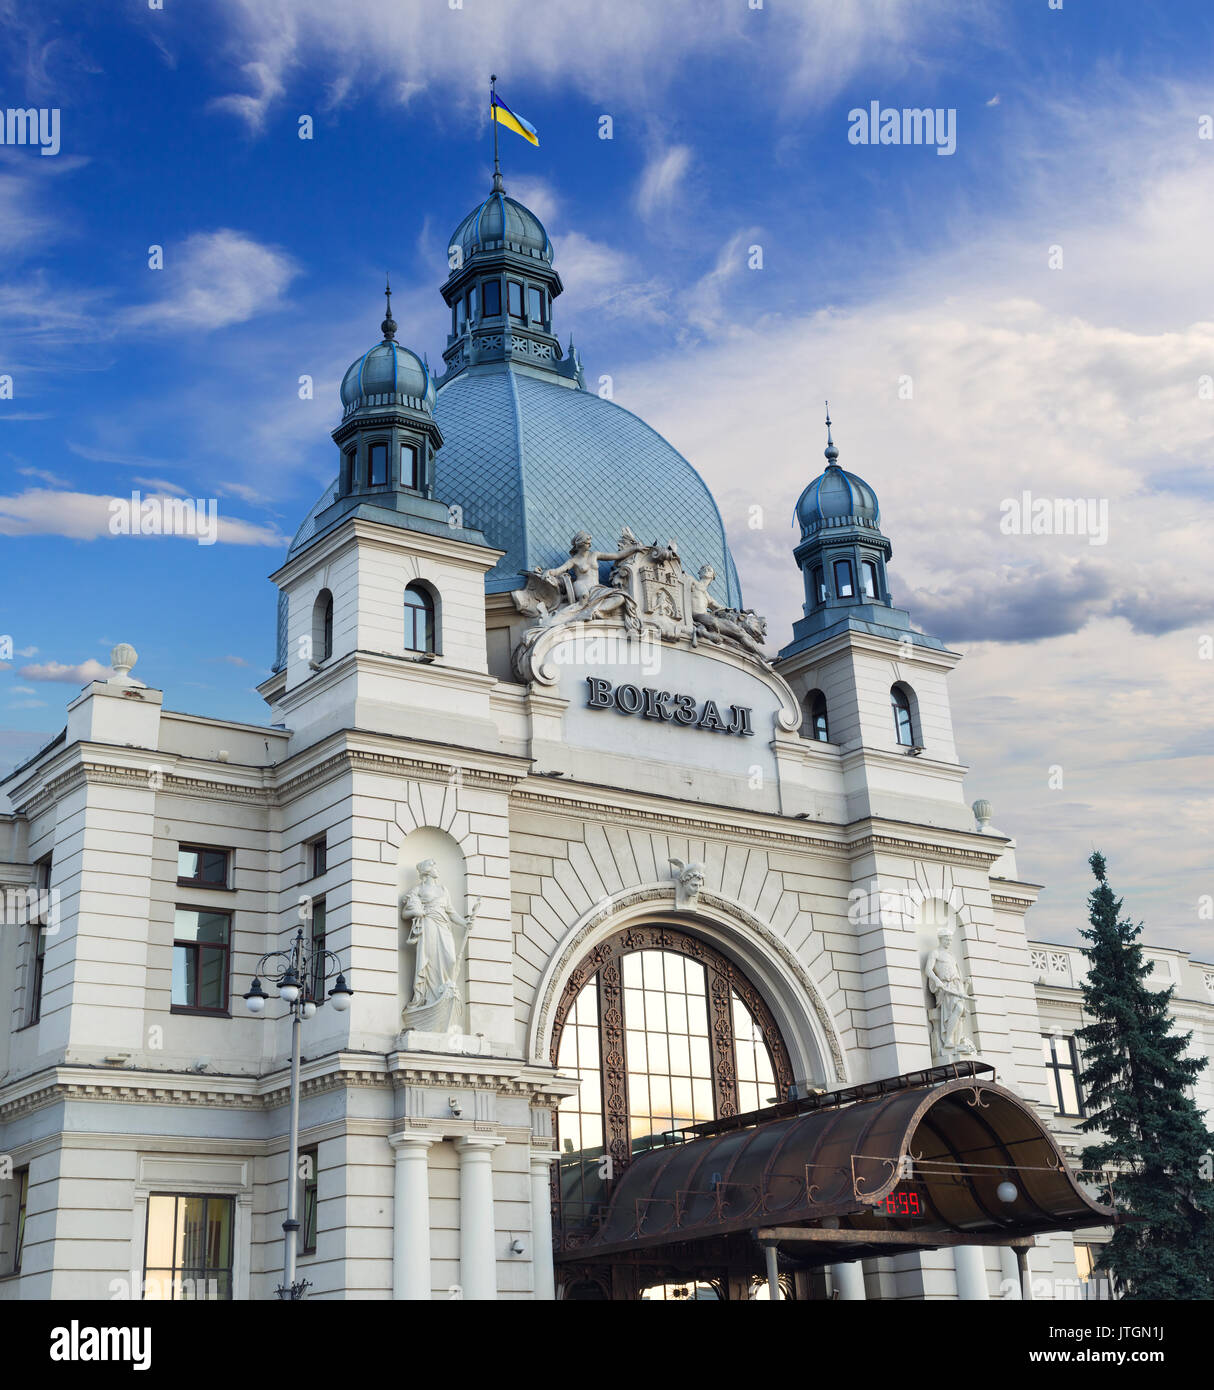 Lvov la principal terminal de trenes en Lviv, Ucrania. Es una de las más notables obras de arquitectura Art Nouveau en la antigua Galicia. La estación fue o Foto de stock